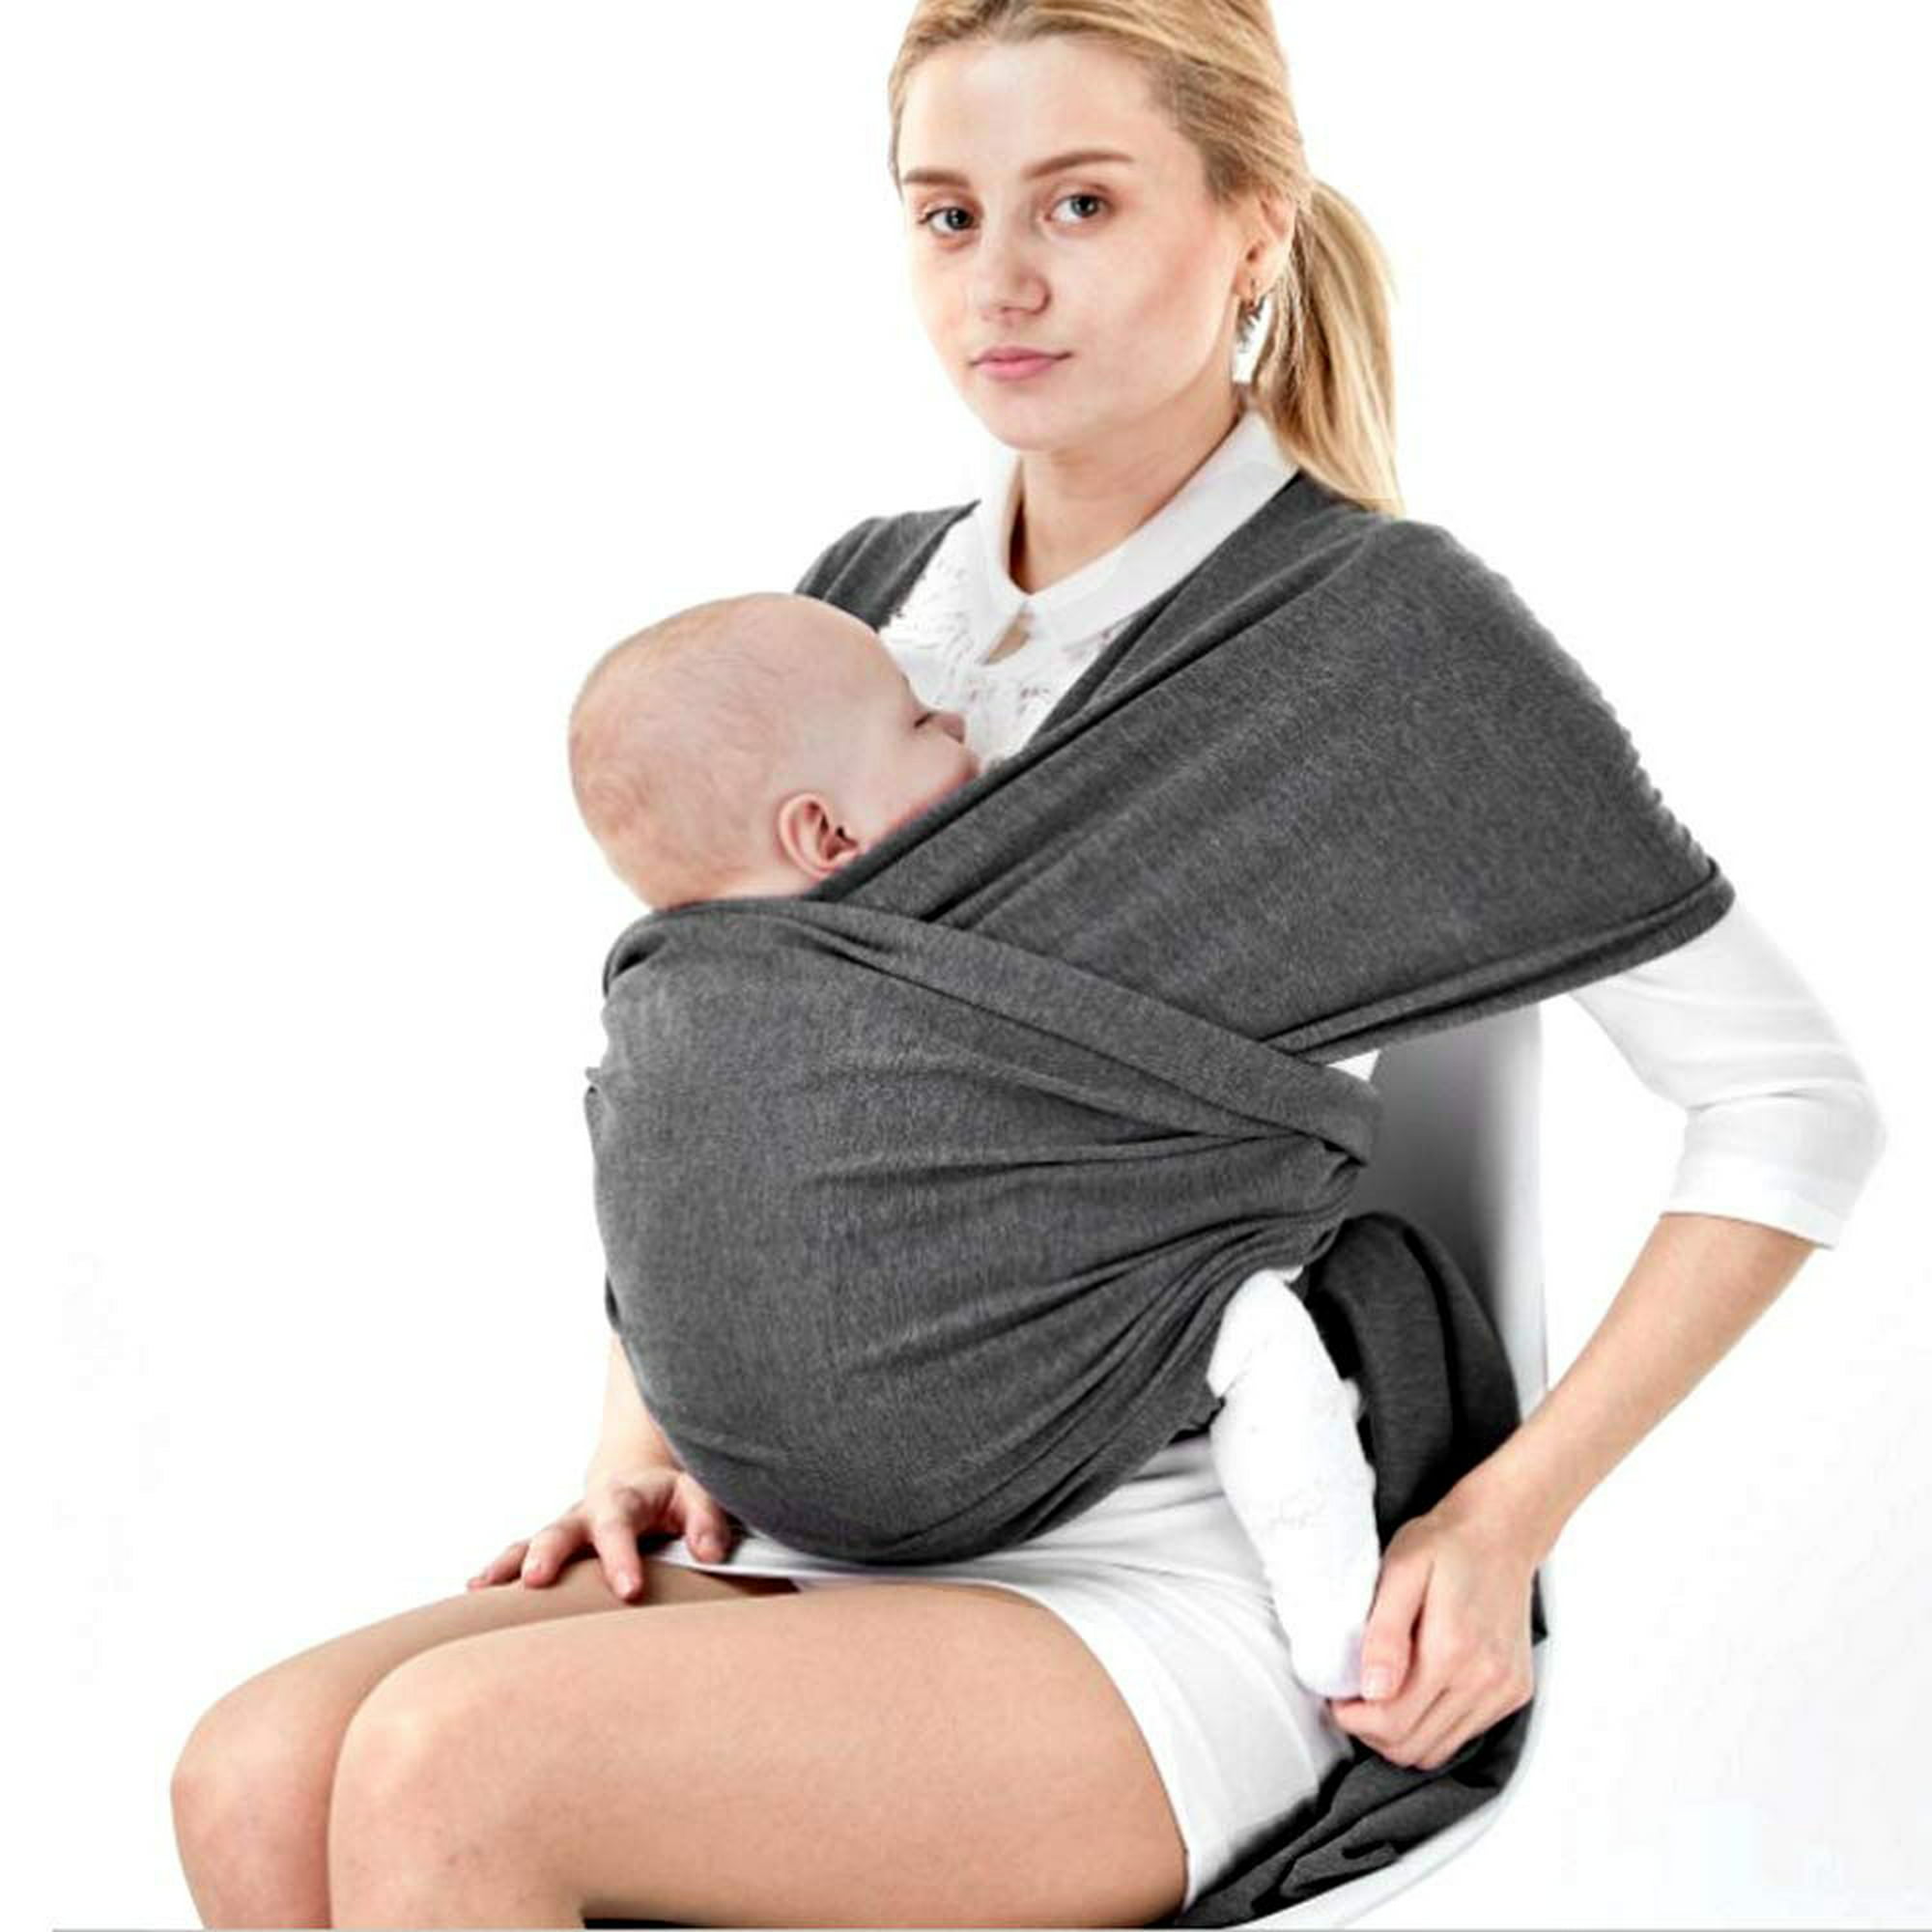 LAT Fular portabebé para recién nacidos, Fular porteo elastizado y  ergonómic,Porta bebés manos libres, Marsupio bebé y Niños hasta 15 Kg, Gris